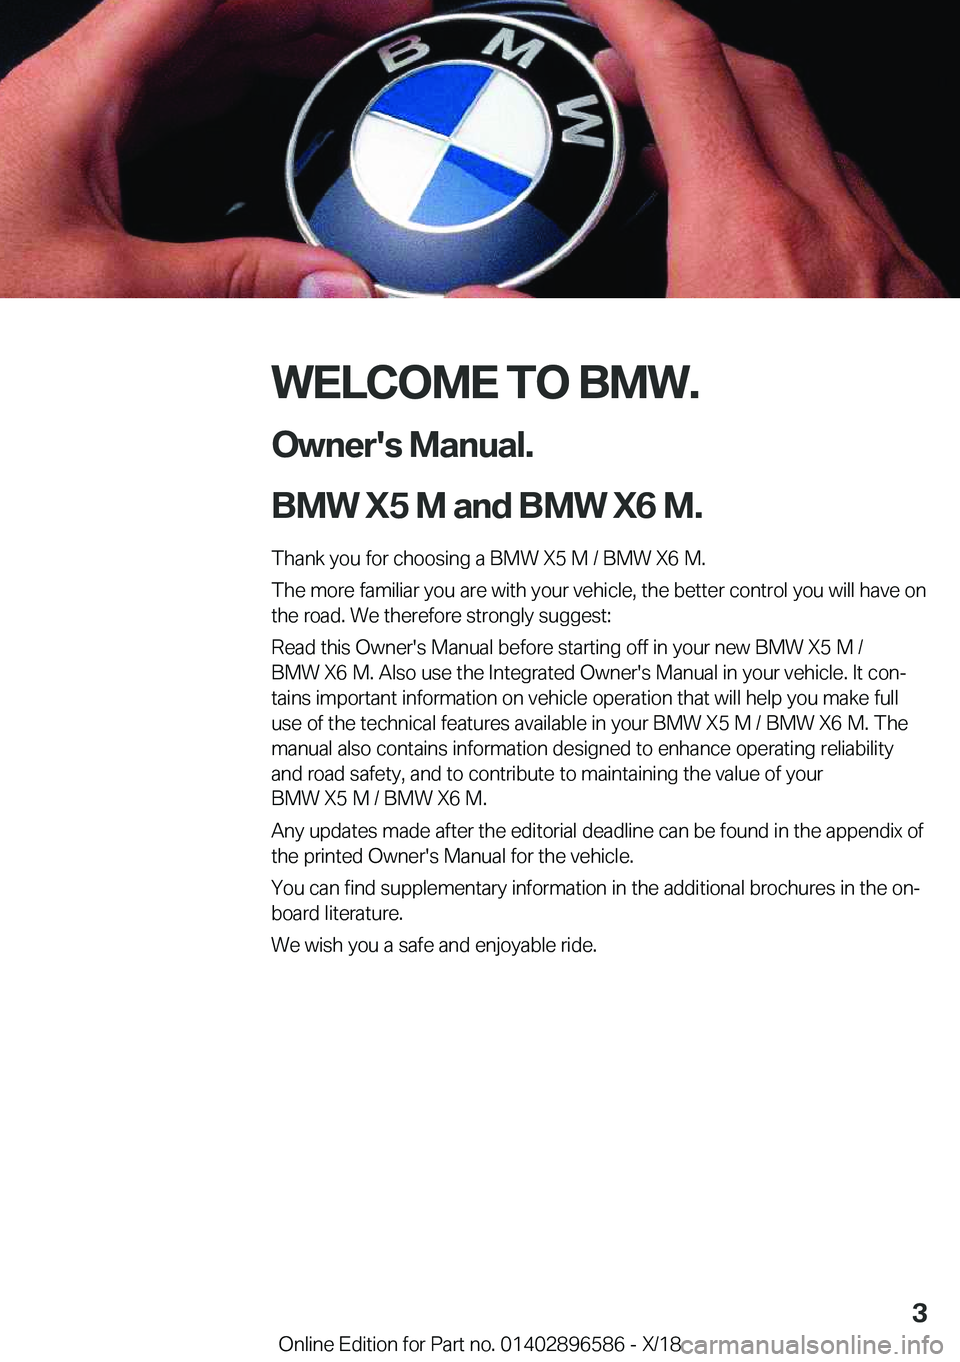 BMW X6 M 2019  Owners Manual �W�E�L�C�O�M�E��T�O��B�M�W�.�O�w�n�e�r�'�s��M�a�n�u�a�l�.
�B�M�W��X�5��M��a�n�d��B�M�W��X�6��M�.
�T�h�a�n�k��y�o�u��f�o�r��c�h�o�o�s�i�n�g��a��B�M�W��X�5��M��/��B�M�W��X�6��M�.